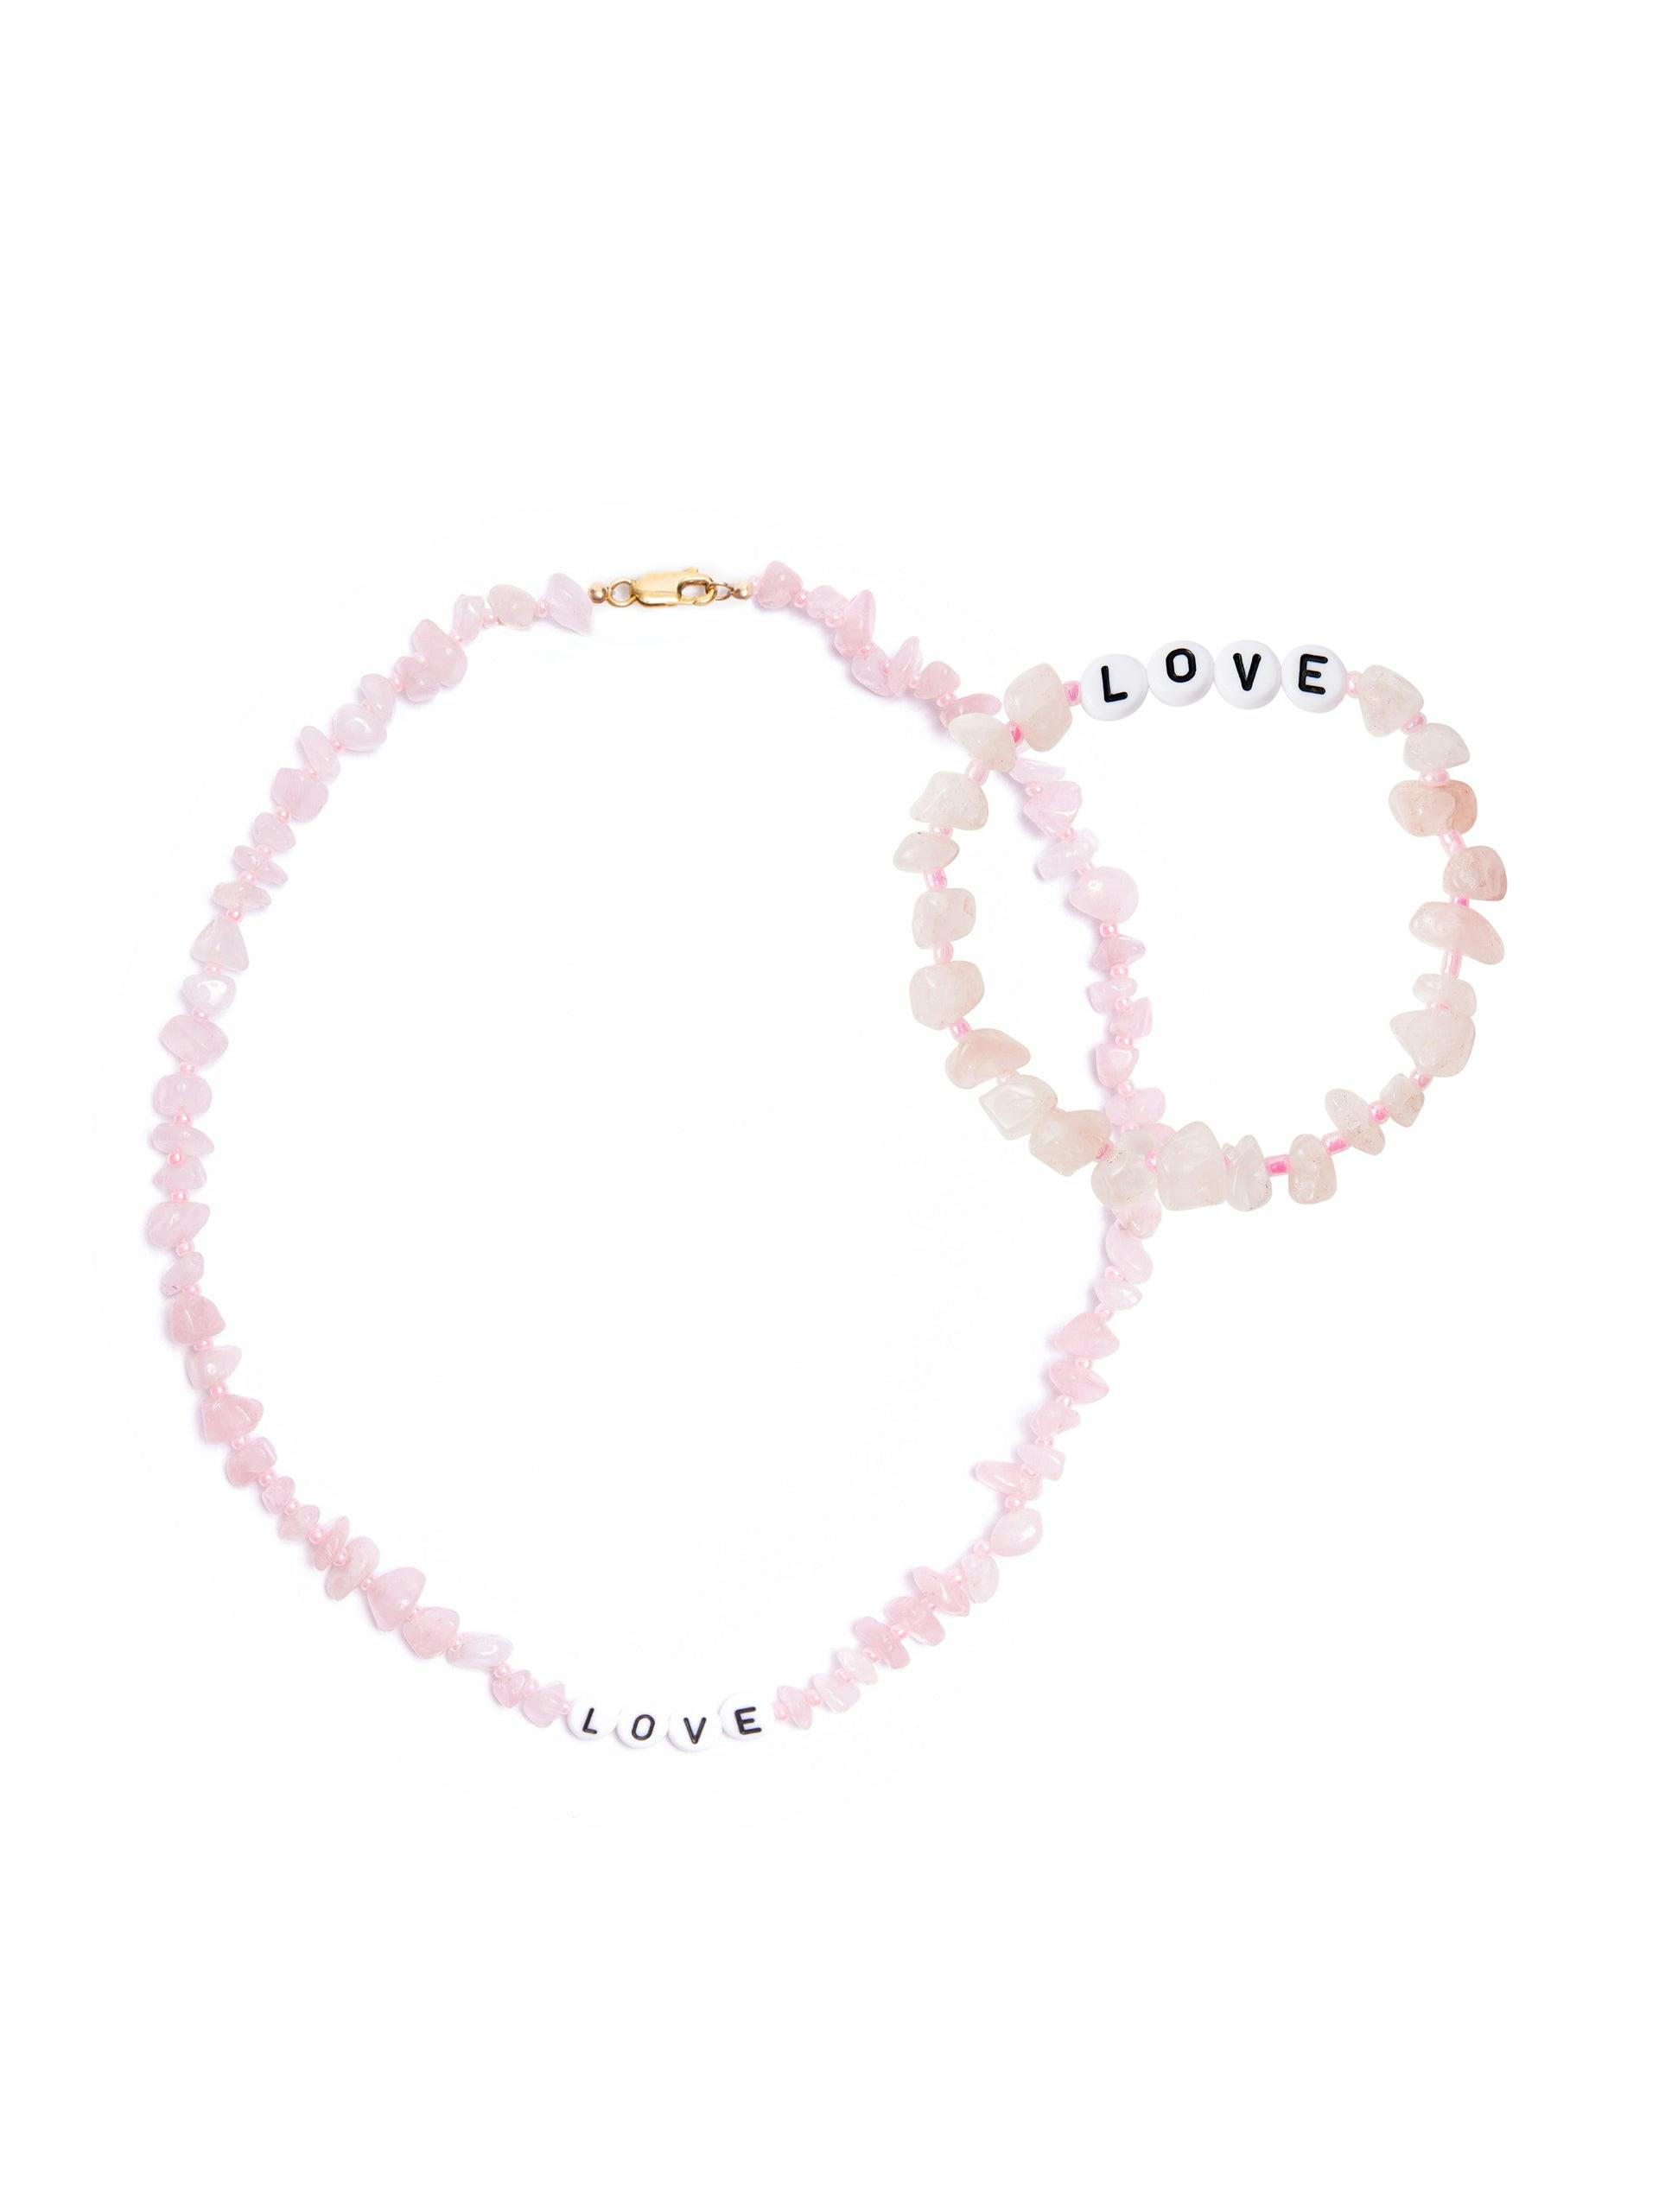 Rose Quartz crystal necklace and bracelet set